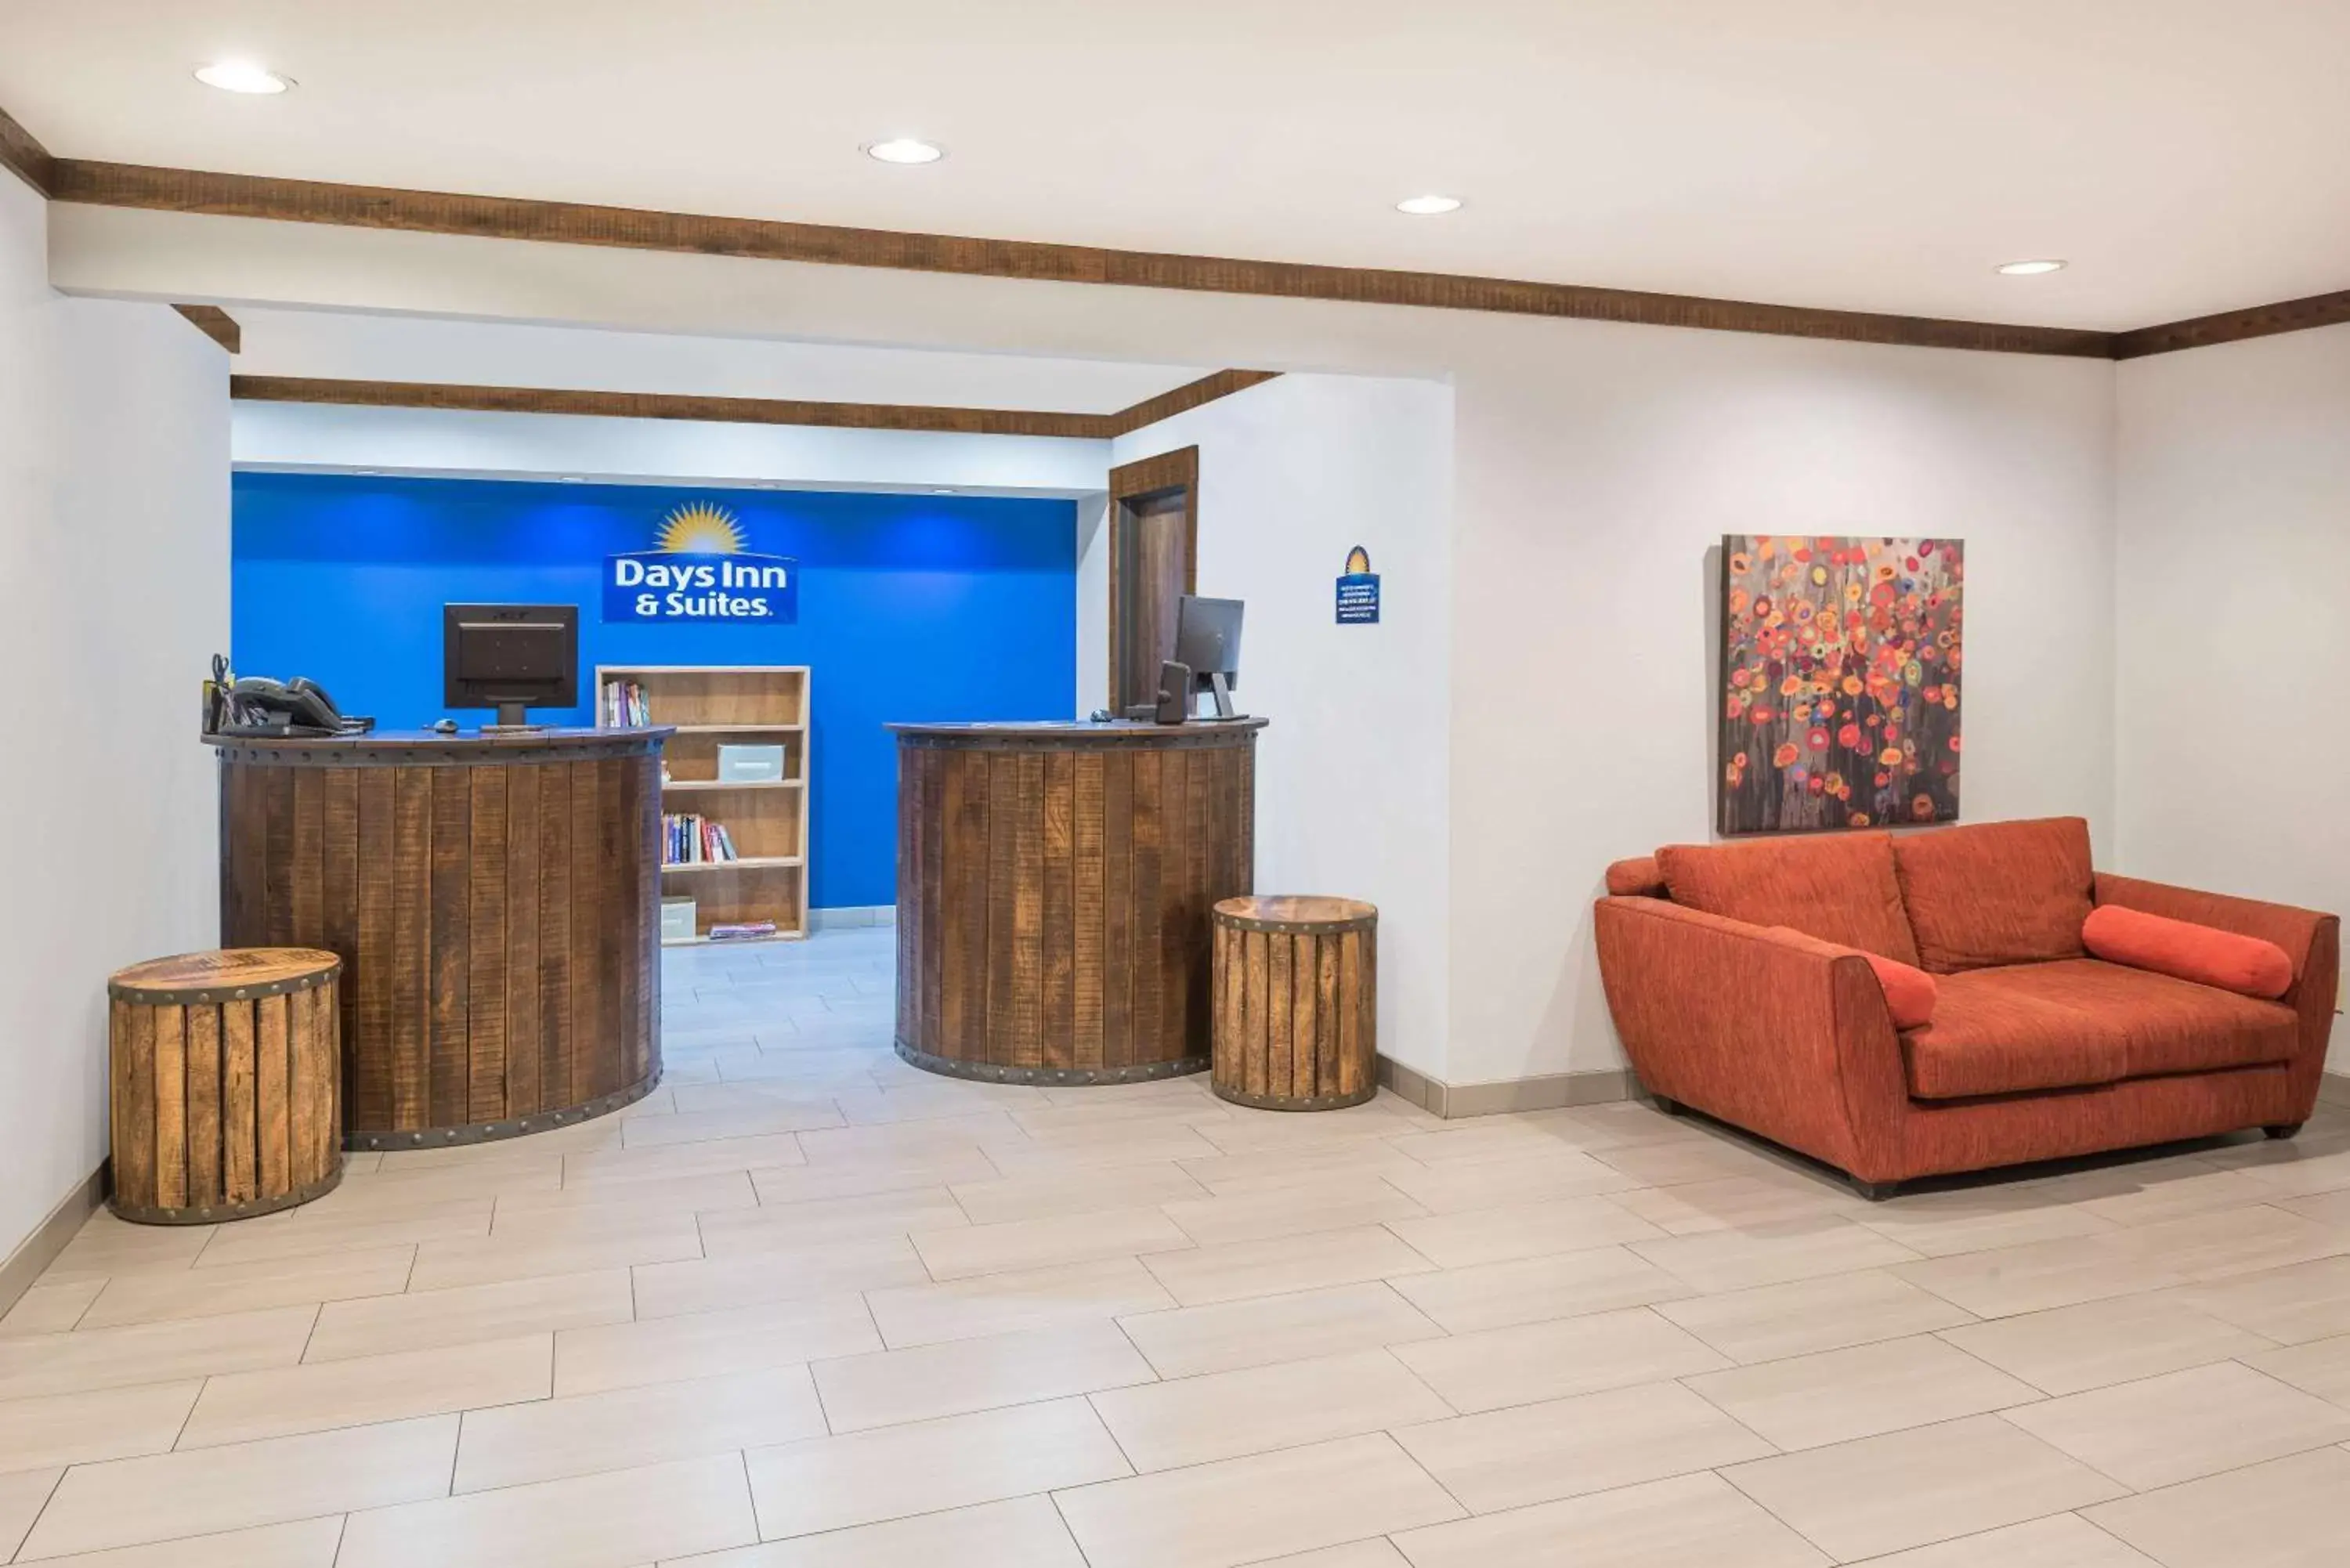 Lobby or reception, Lobby/Reception in Days Inn by Wyndham Osage Beach Lake of the Ozarks